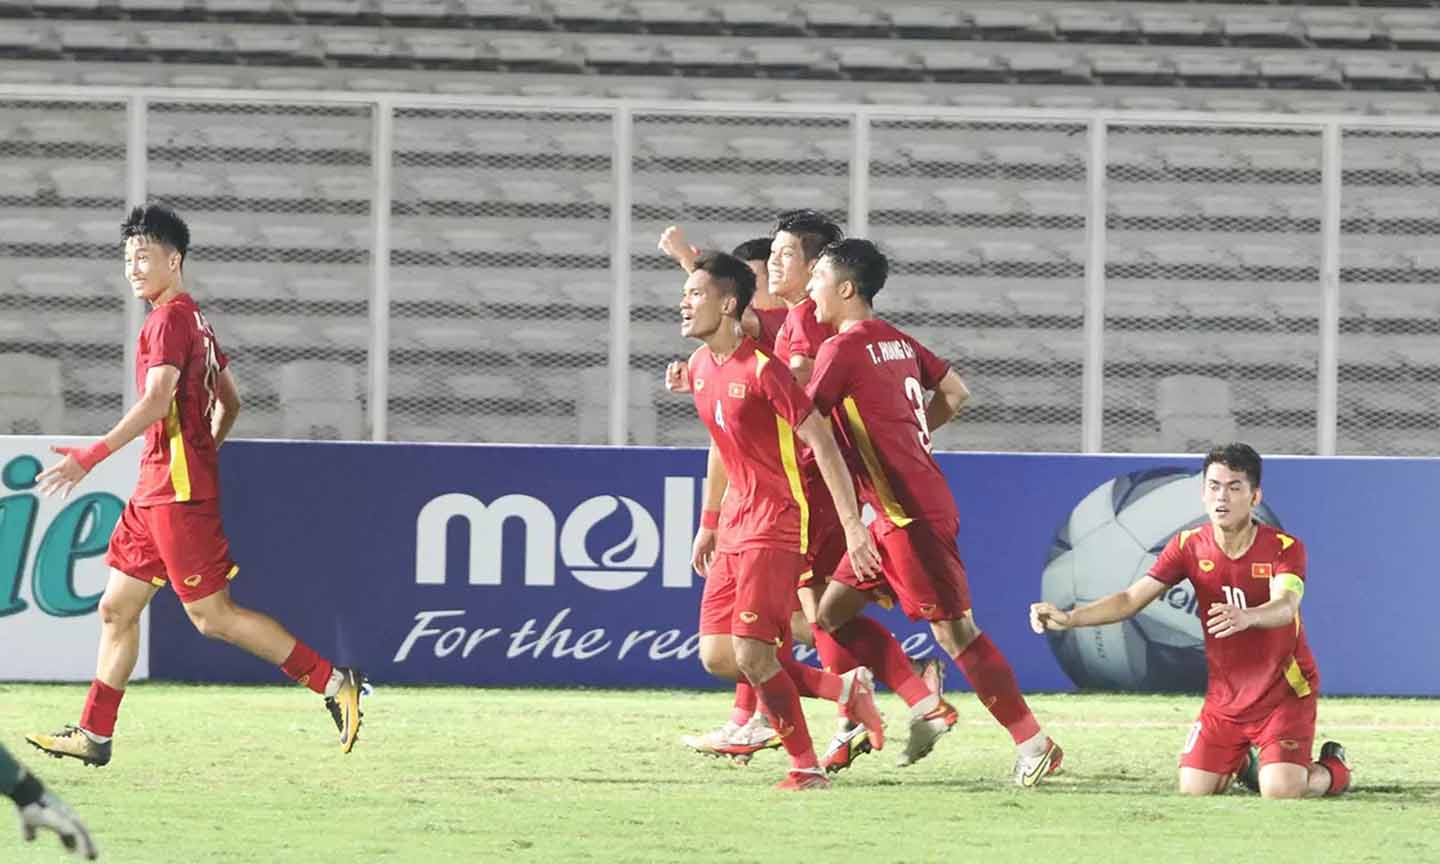 U19 Việt Nam đã có hành trình rất đáng khen ngợi khi giành vé vào bán kết dù chung bảng với U19 Indonesia và U19 Thái Lan. Ảnh: Vietnnamnet.vn